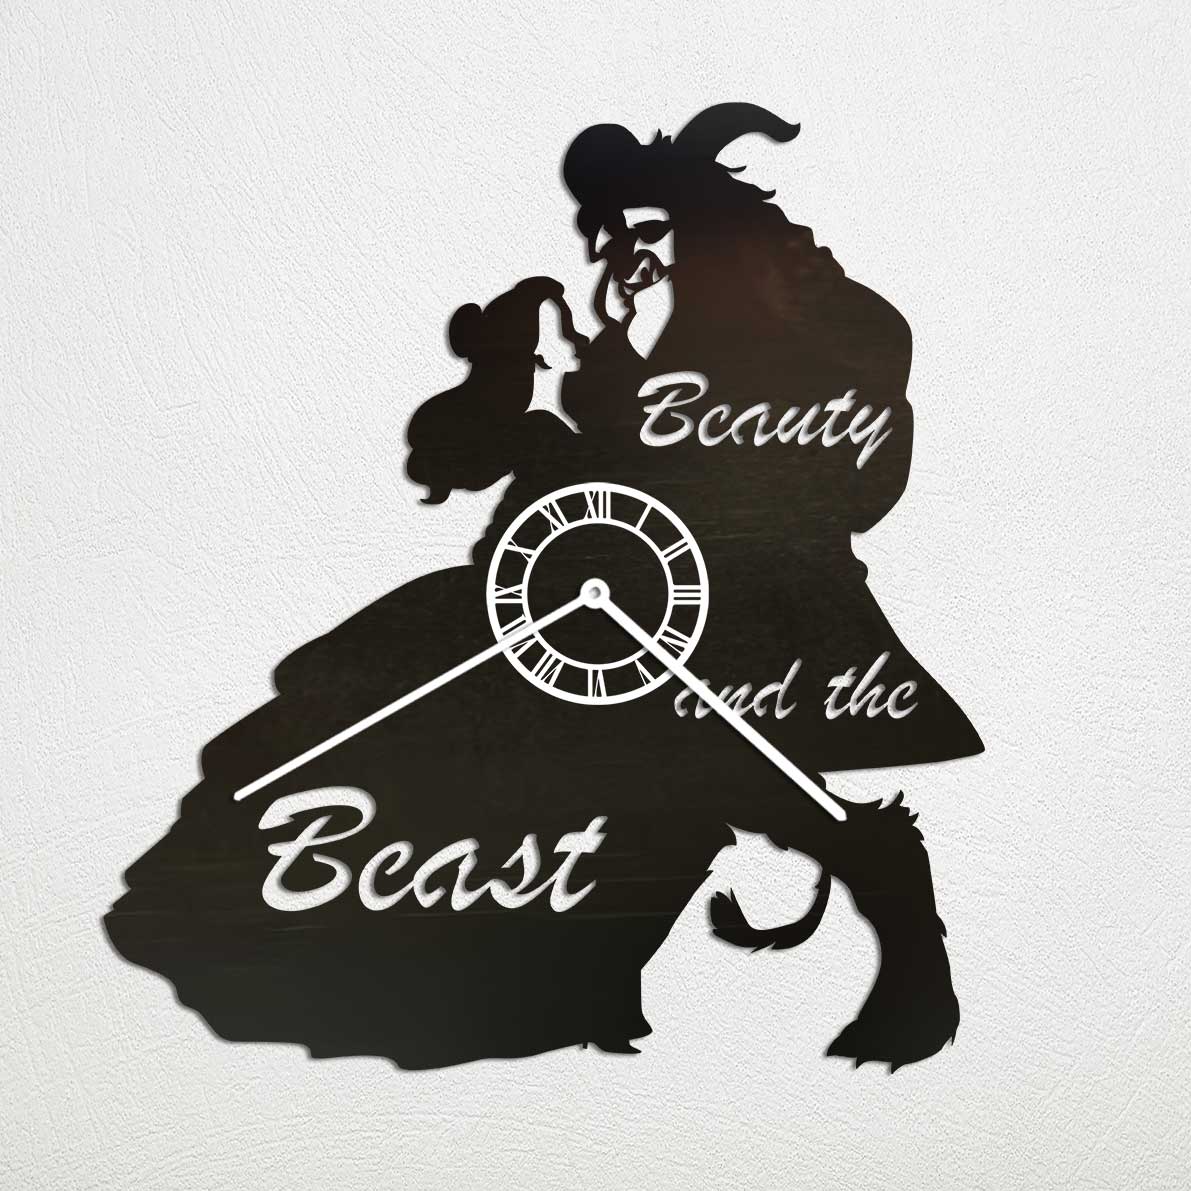 BClock Beauty & Beast